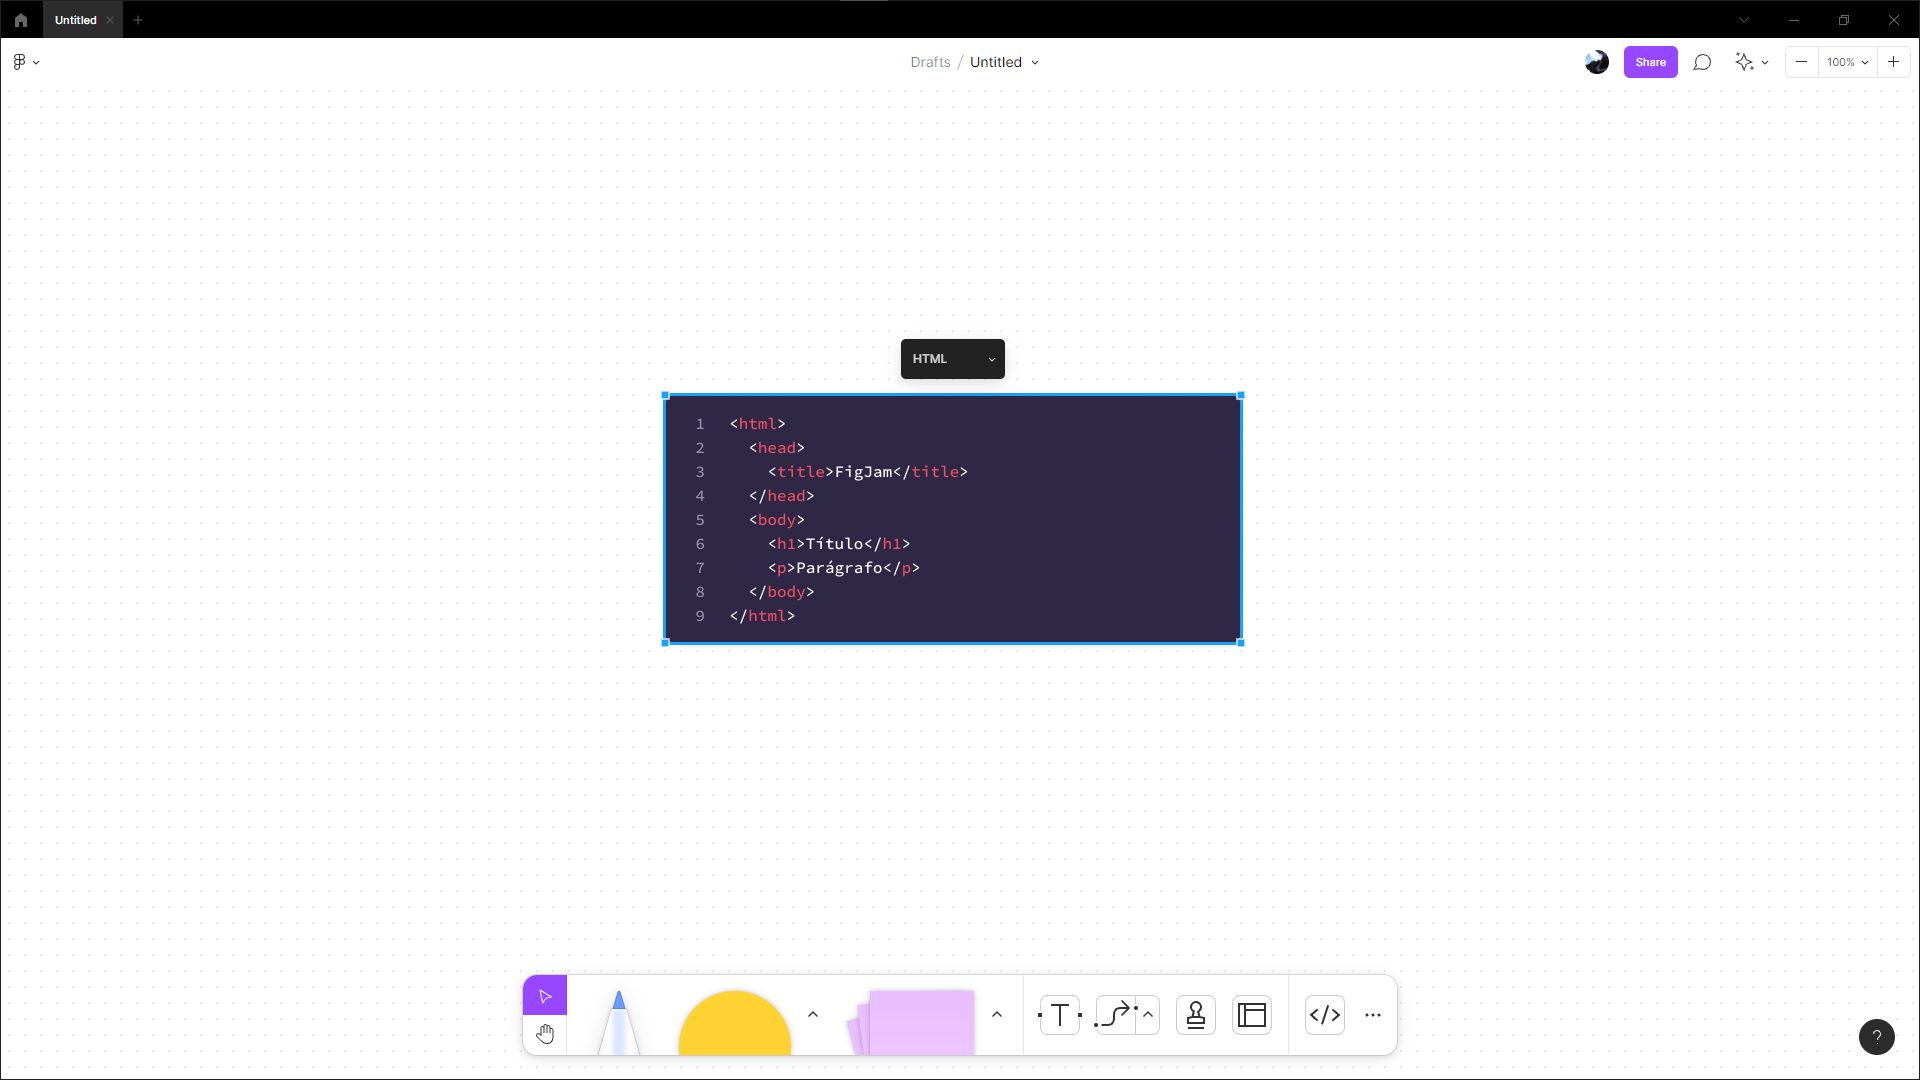 Tela do FigJam com uma pequena tela de programação ao meio, mostrando alguns códigos e textos coloridos.